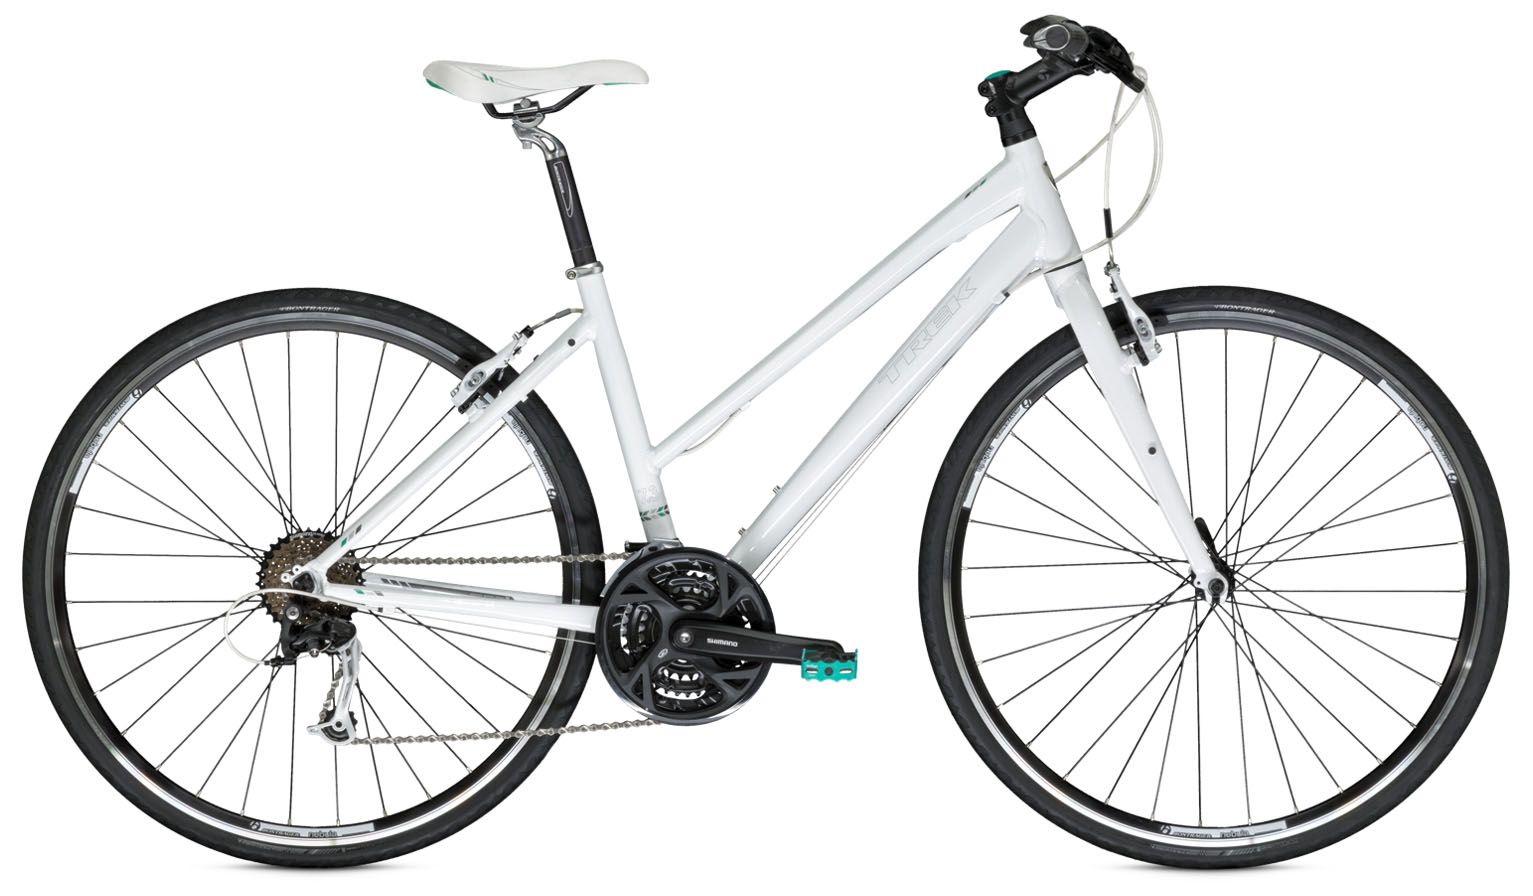  Отзывы о Женском велосипеде Trek 7.3 FX WSD 2014